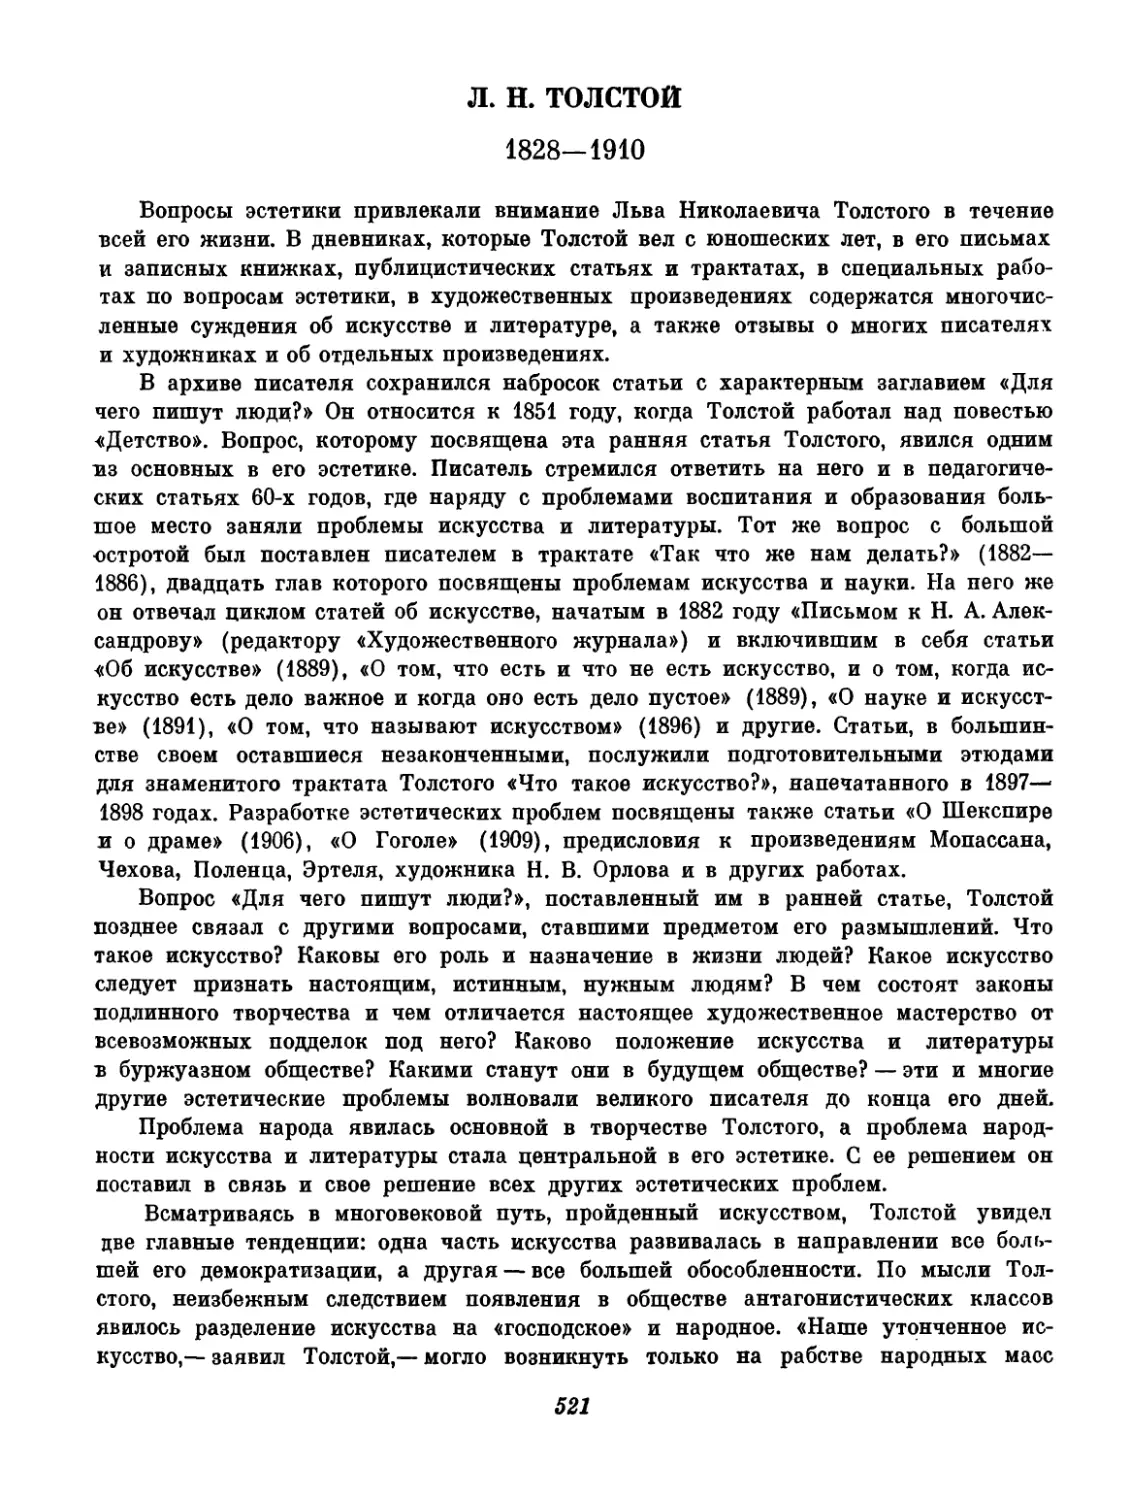 Л. Толстой. Вступительный текст и составление К. Н. Ломунова